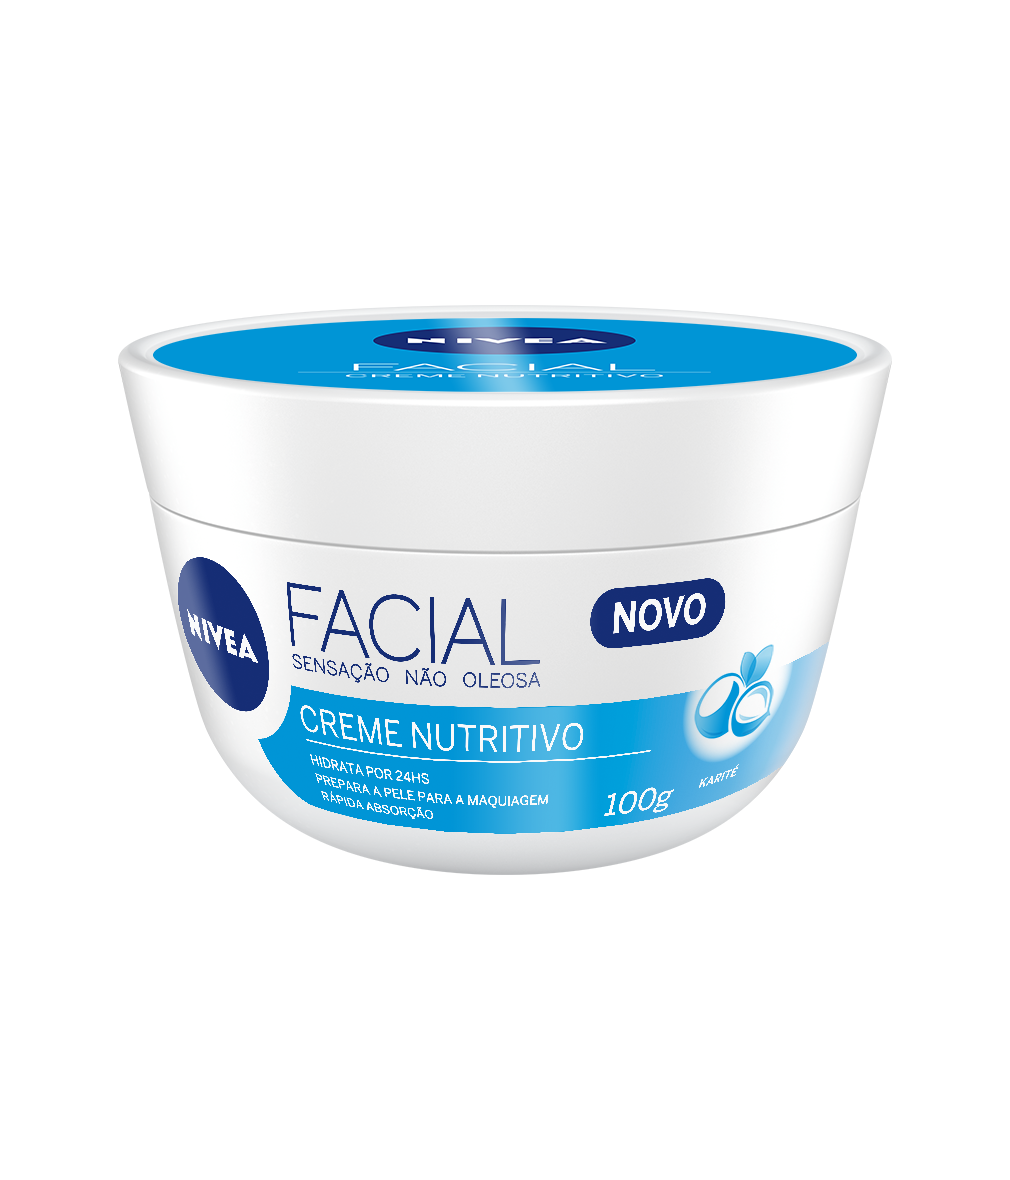 Nivea Facial Creme Nutritivo- 100G